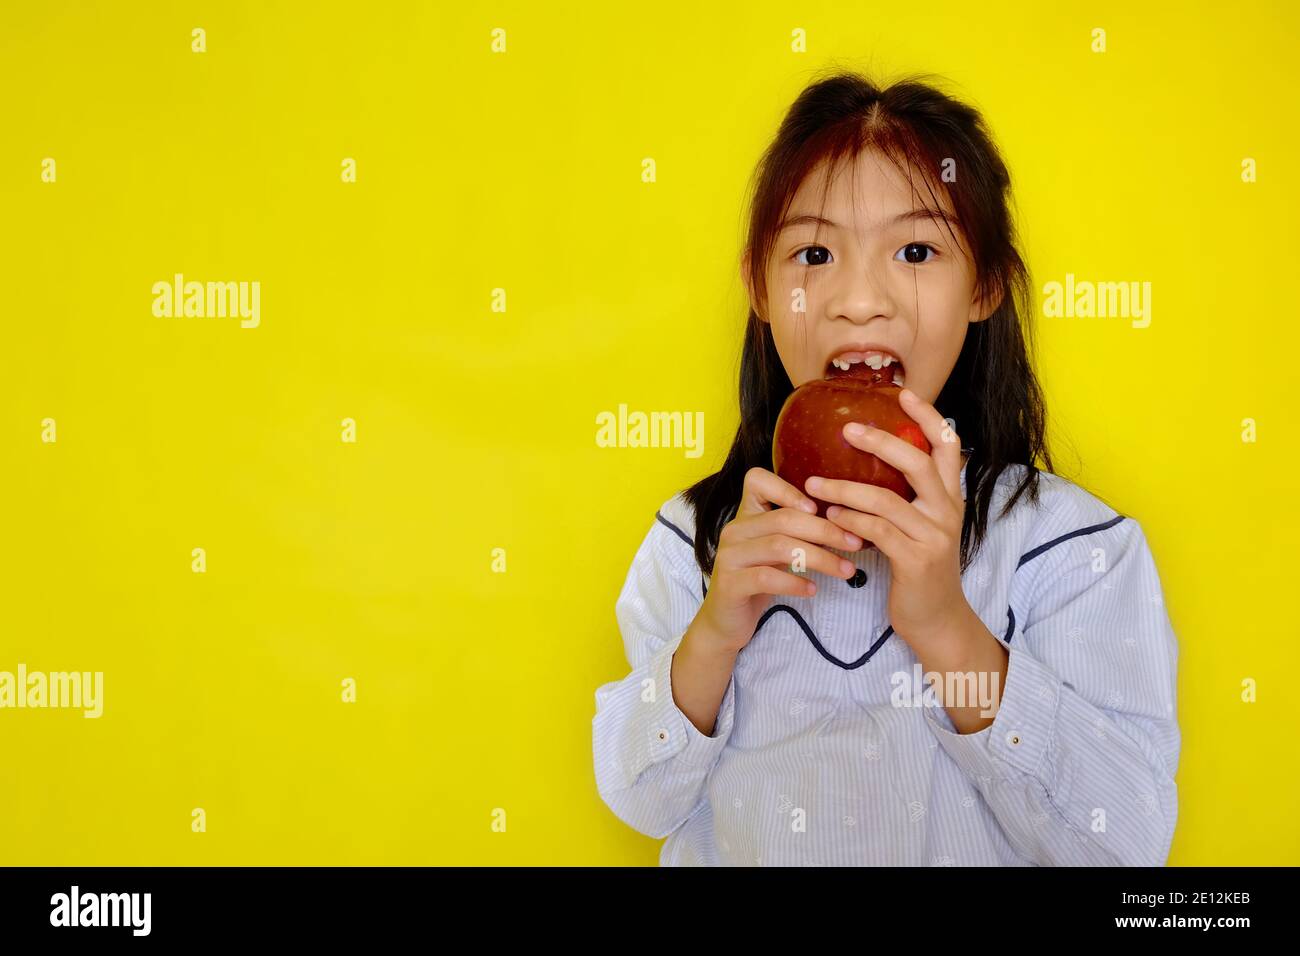 Une jolie jeune fille asiatique attrapant une pomme rouge, essayant de prendre une morsure. Arrière-plan jaune vif. Banque D'Images